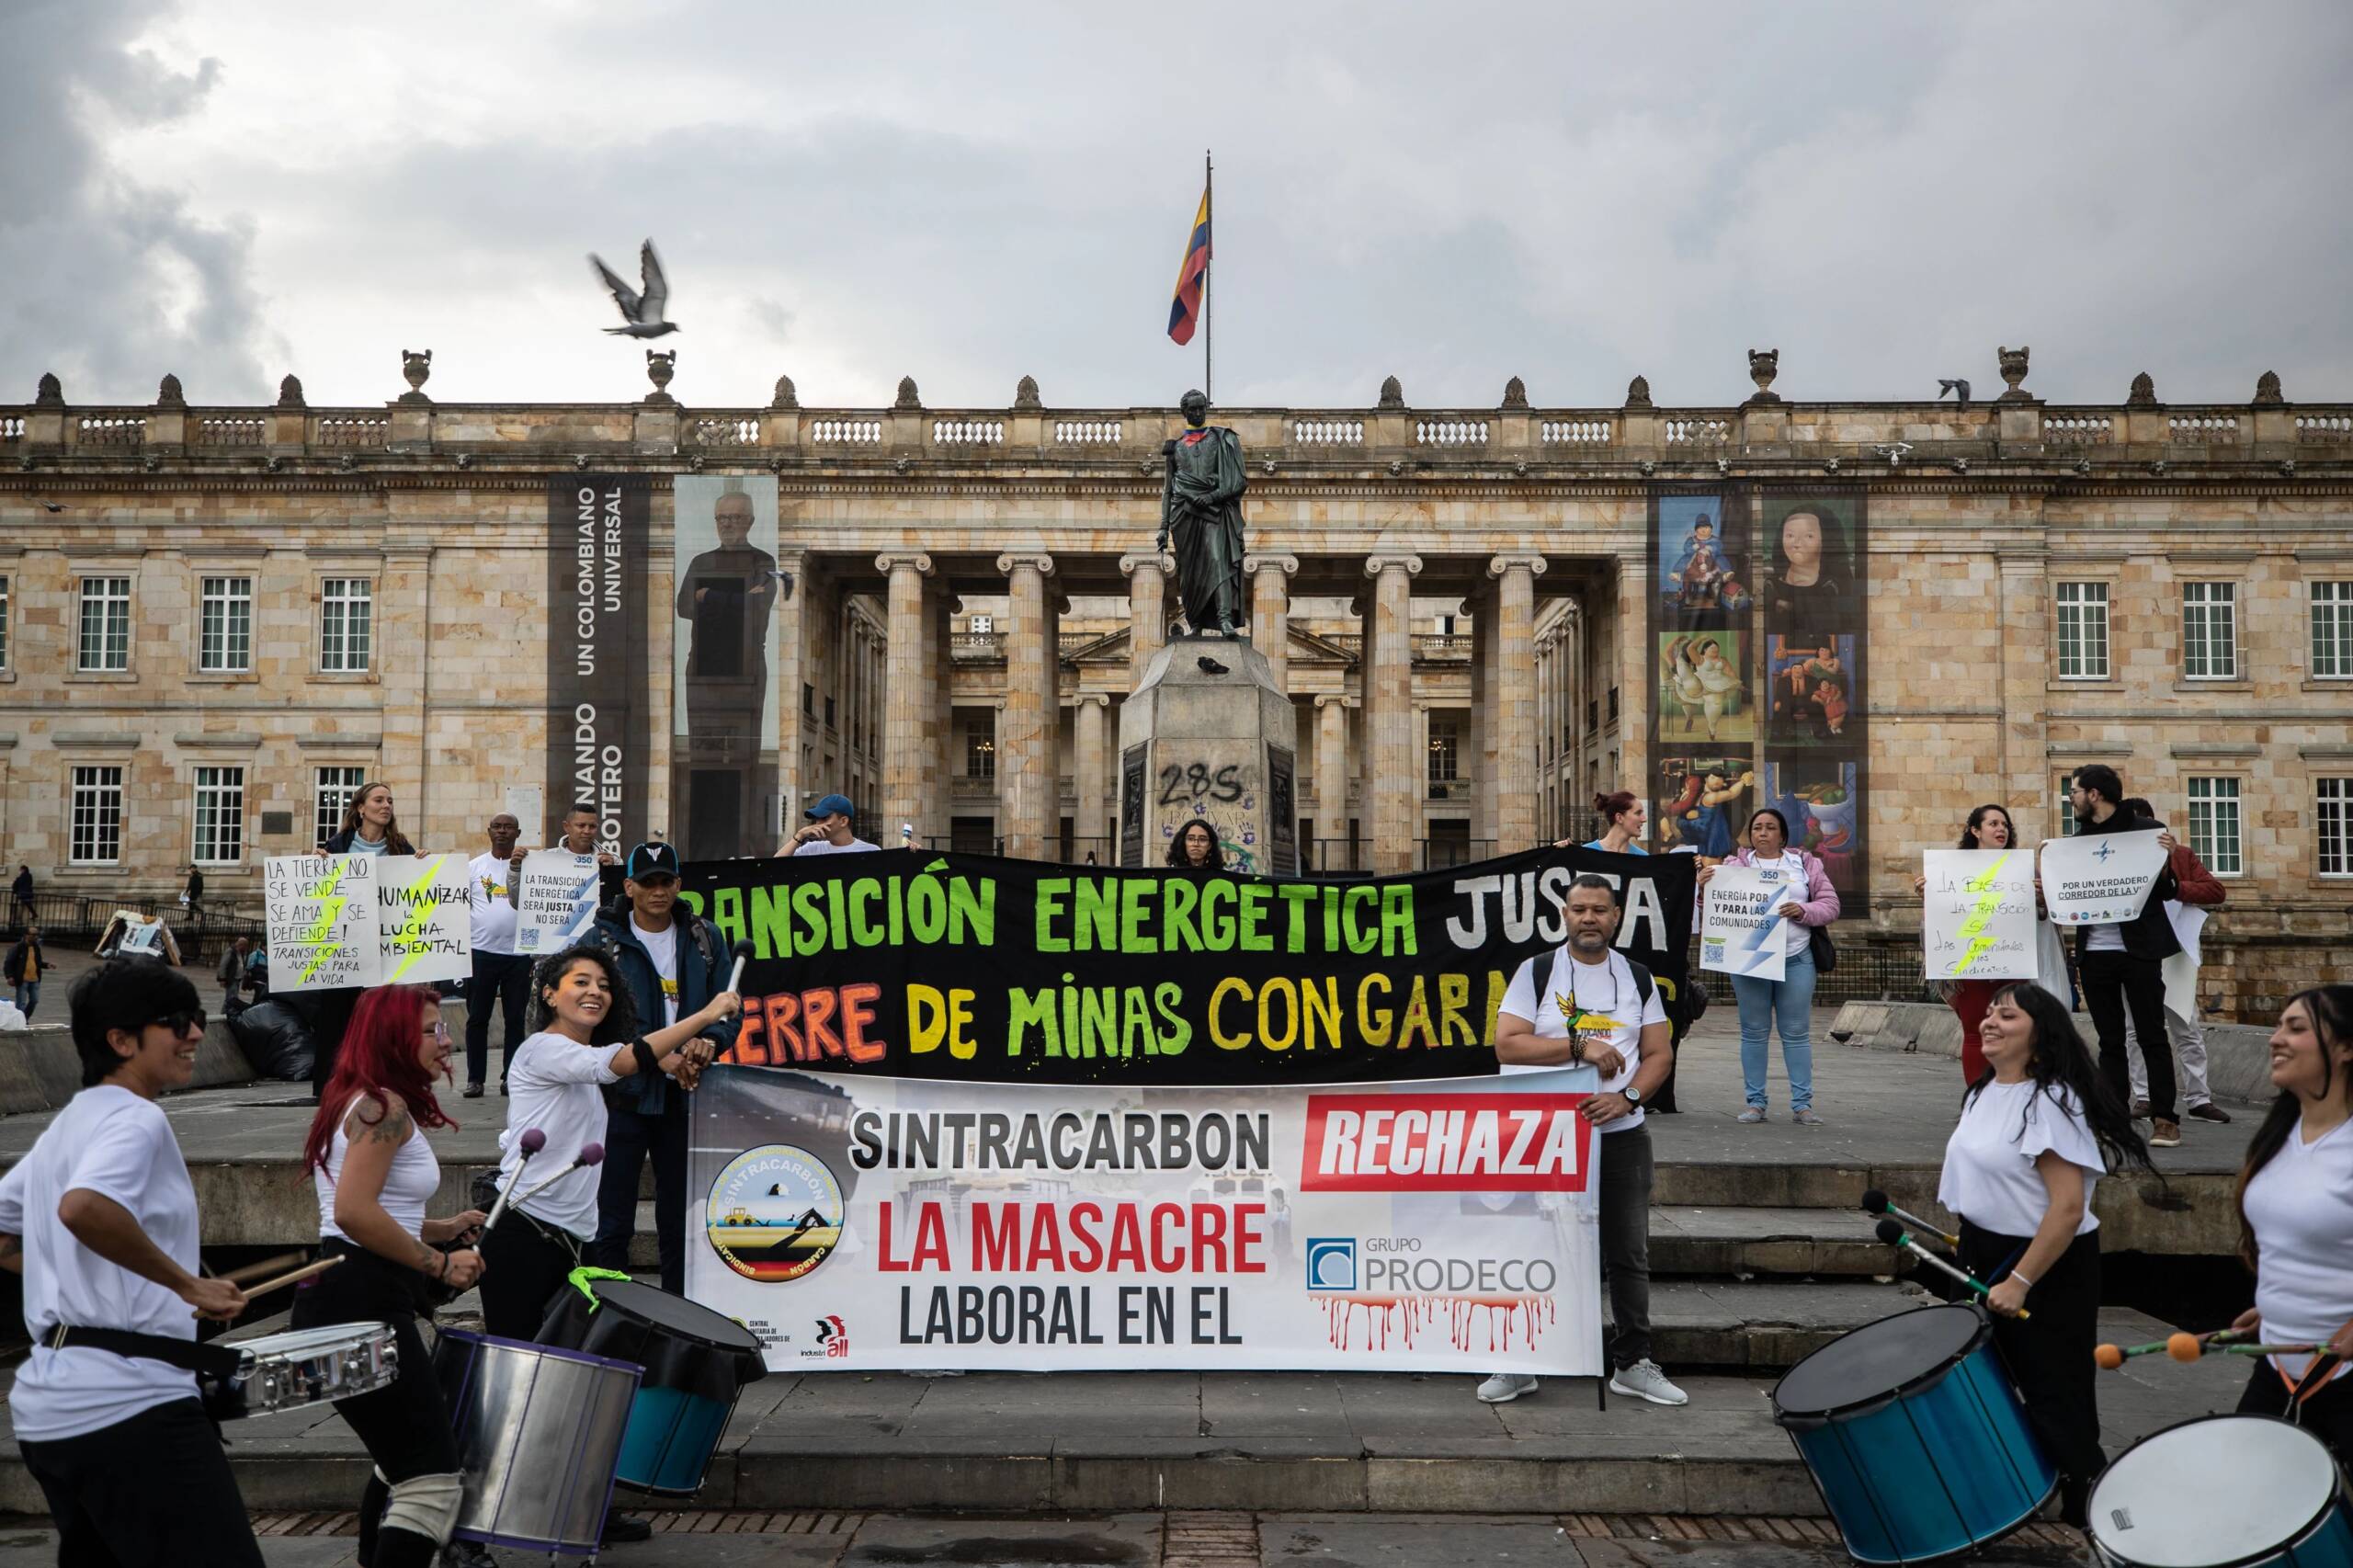 Bogotá, Kolumbien, 3.11.: Aktivist*innen bei öffentlichen Anhörungen und Protesten auf der Plaza de Bolivar für die Schließung von Glencores Tagebau-Kohlemine. Bildnachweis: Iván Valencia